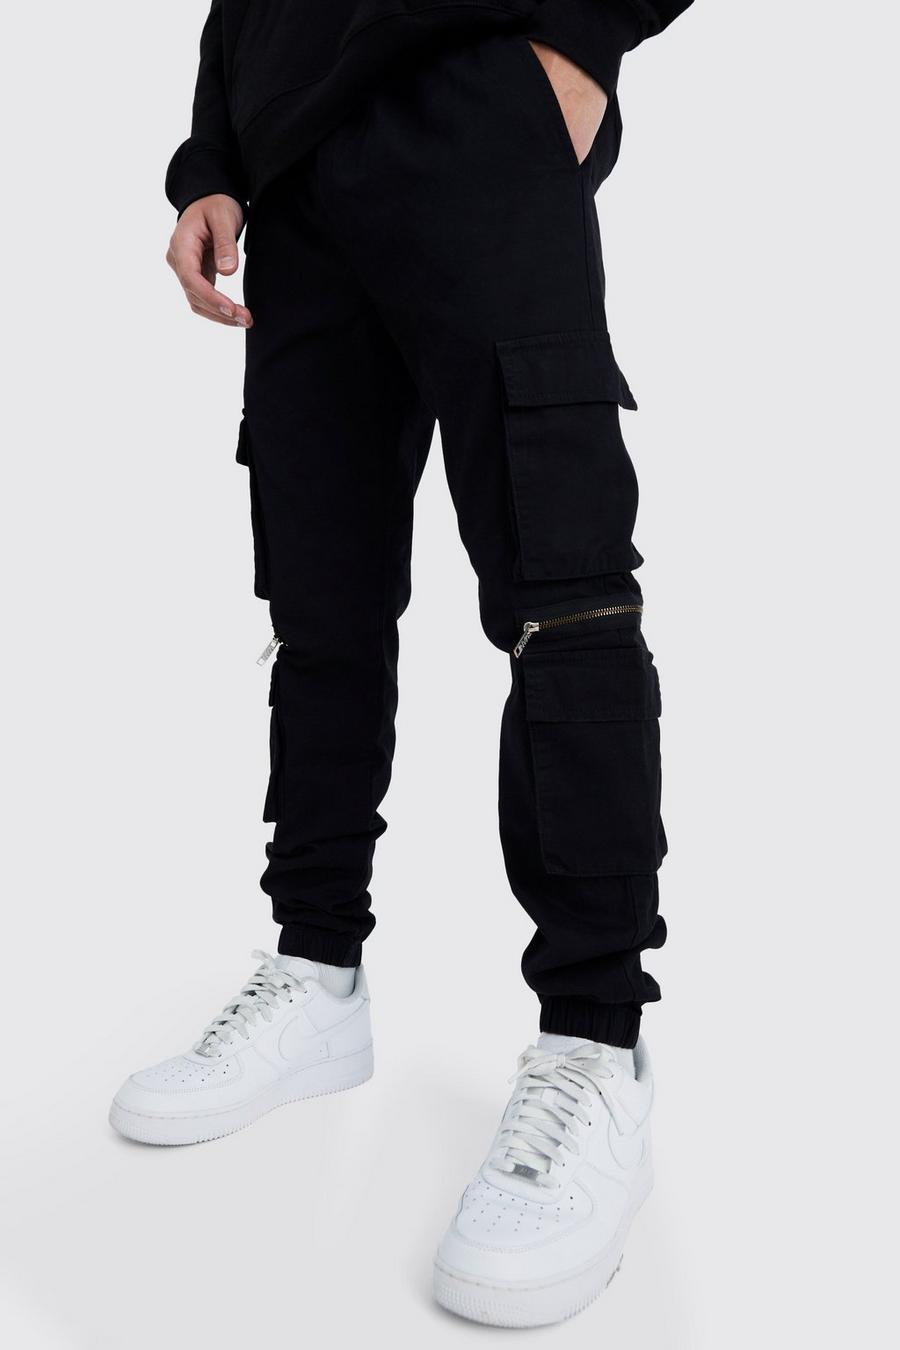 Pantaloni Cargo con tasche multiple, zip e vita elasticizzata, Black negro